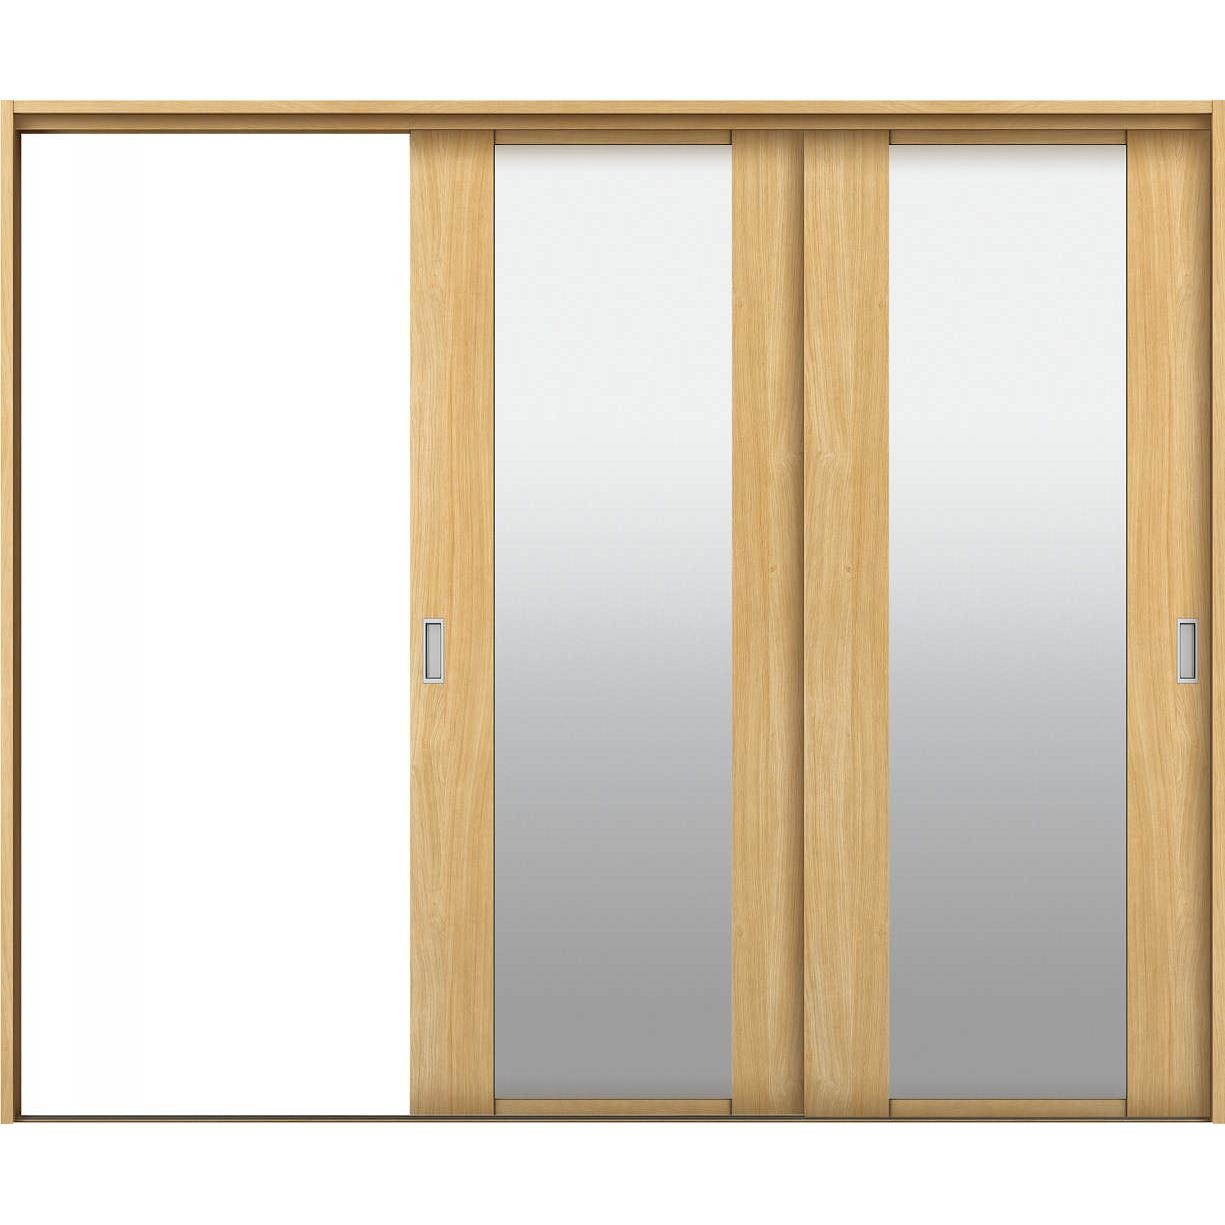 室内建具:木質建材:YKKAP室内引戸:ラフォレスタ[バーティカル]:2枚片引き戸 - ノース&ウエスト - Yahoo!ショッピング